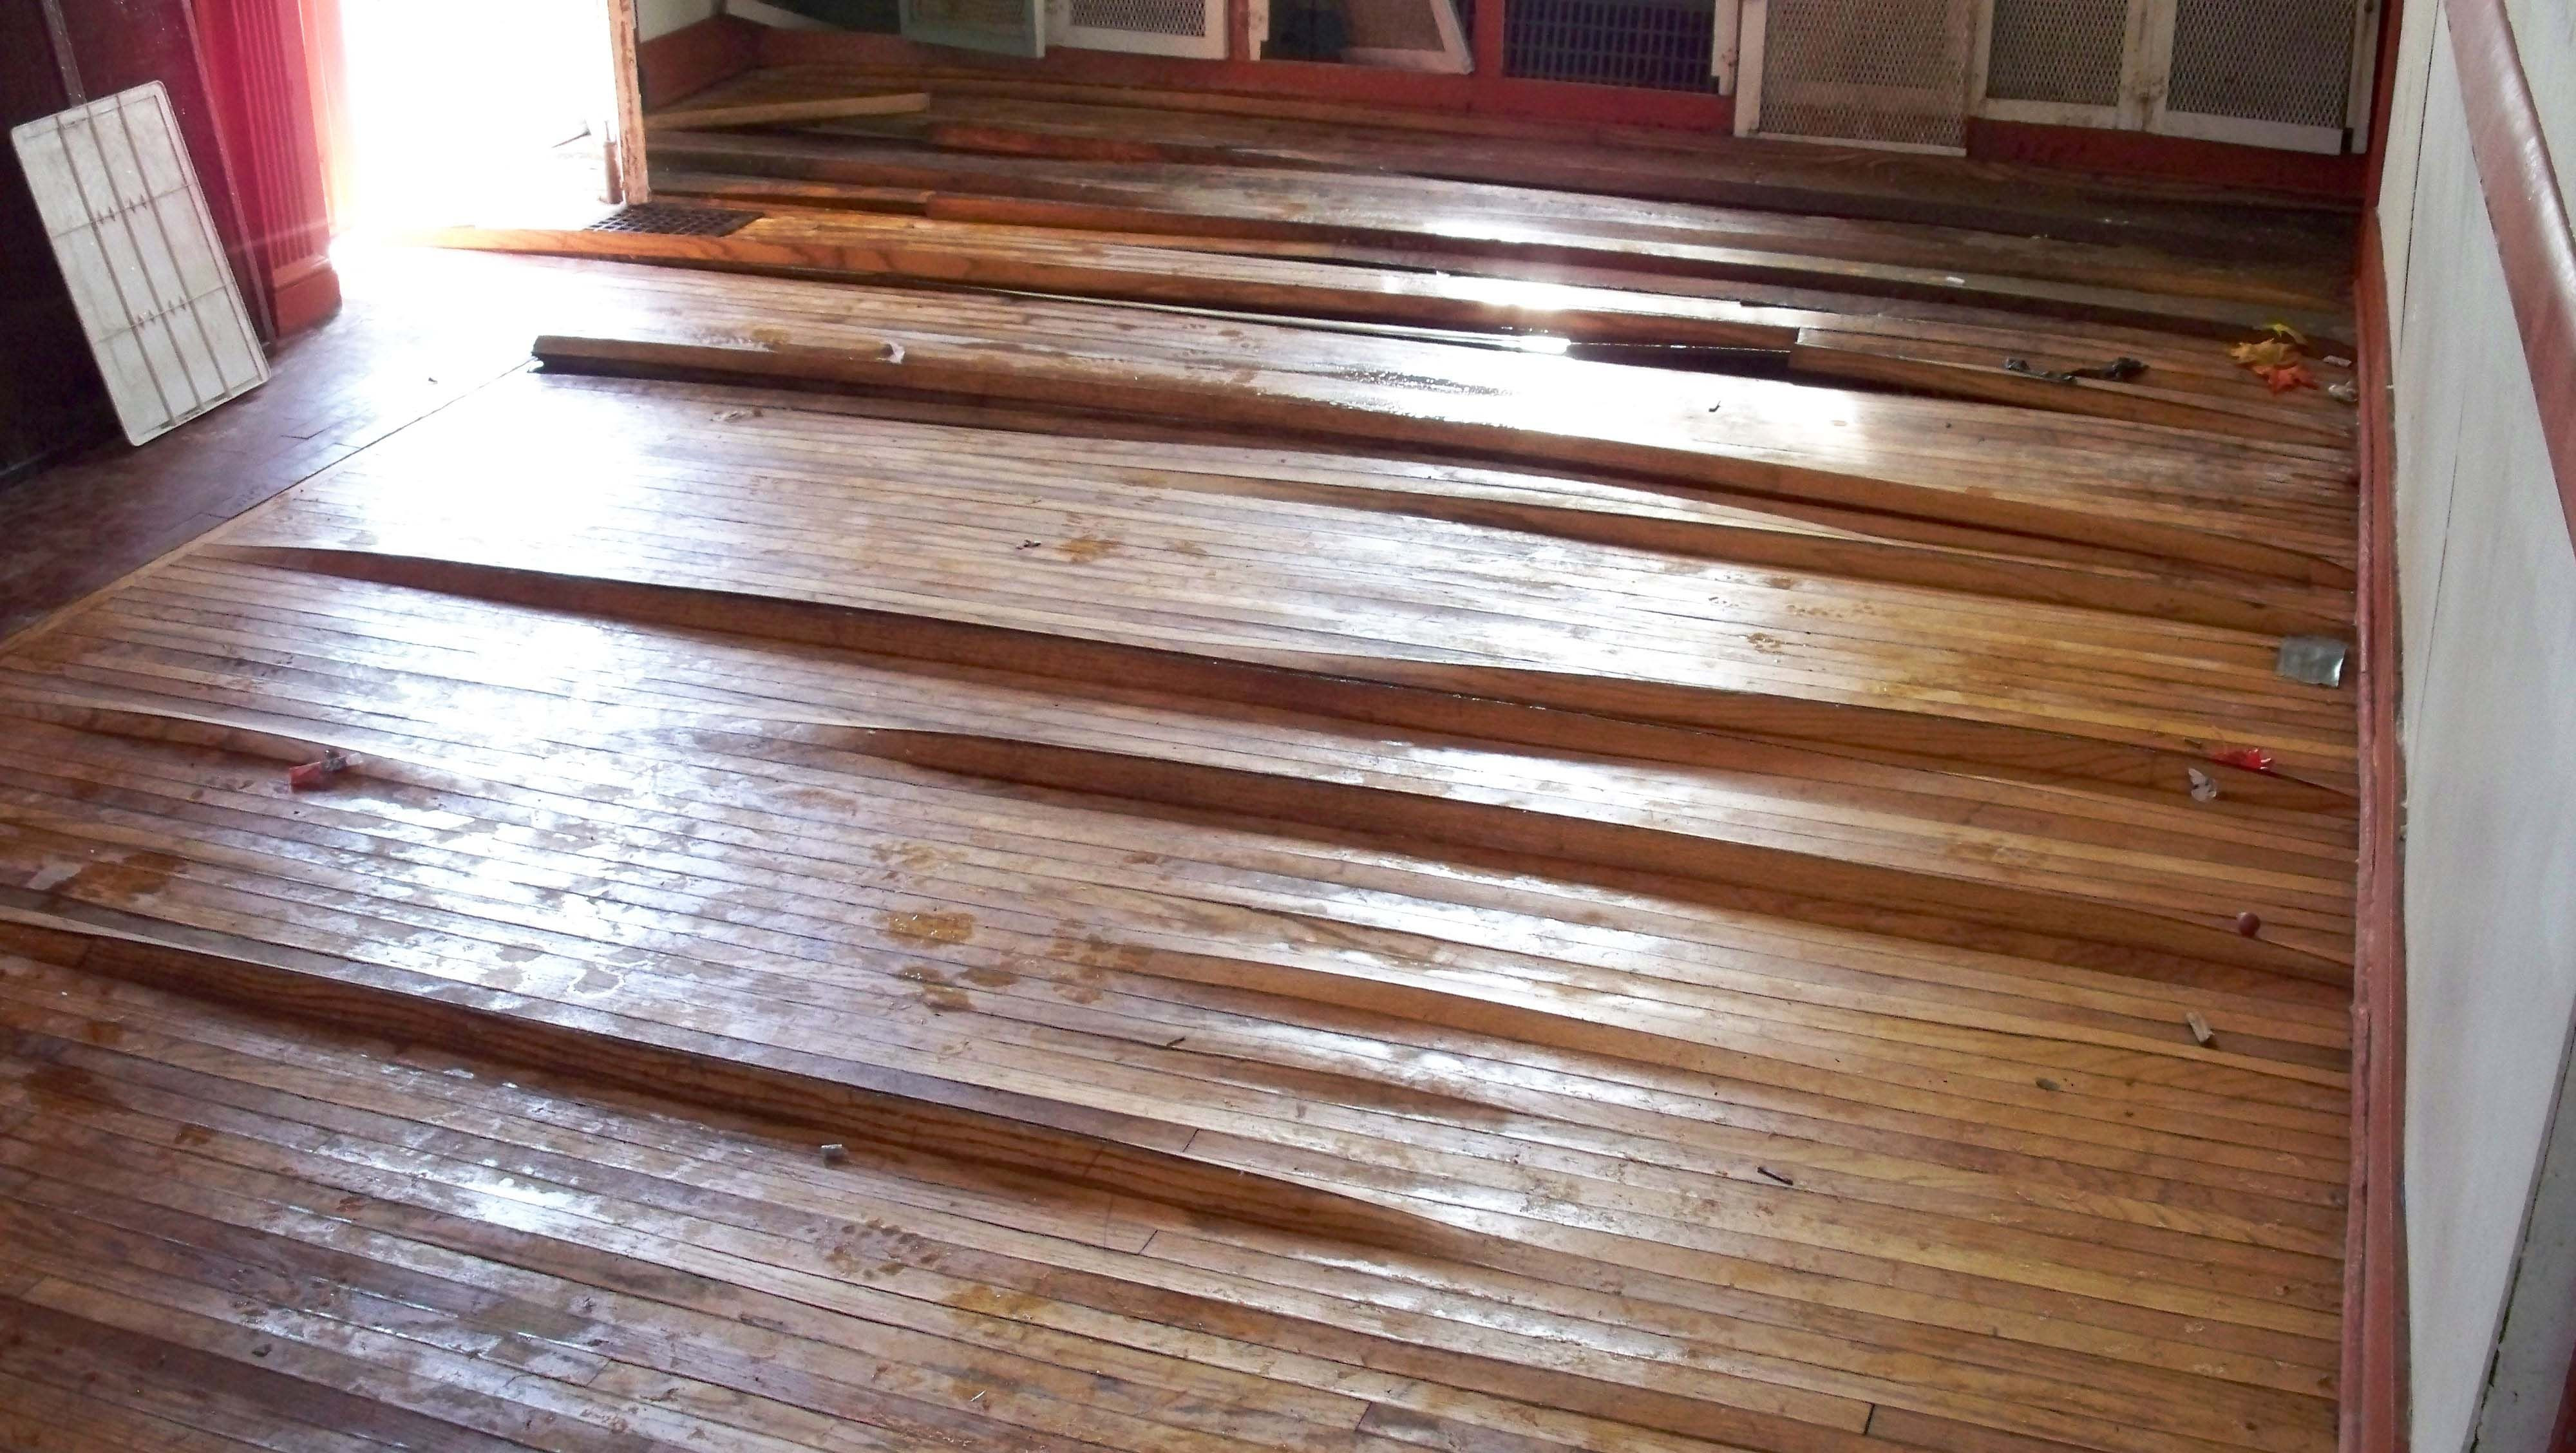 Vinyl Plank Flooring Vs Engineered Hardwood Of Hardwood Flooring Vs Engineered Hardwood Floor Vs Laminate Awesome In Hardwood Flooring Vs Engineered Hardwood Floor Water Damage Warping Hardwood Floors